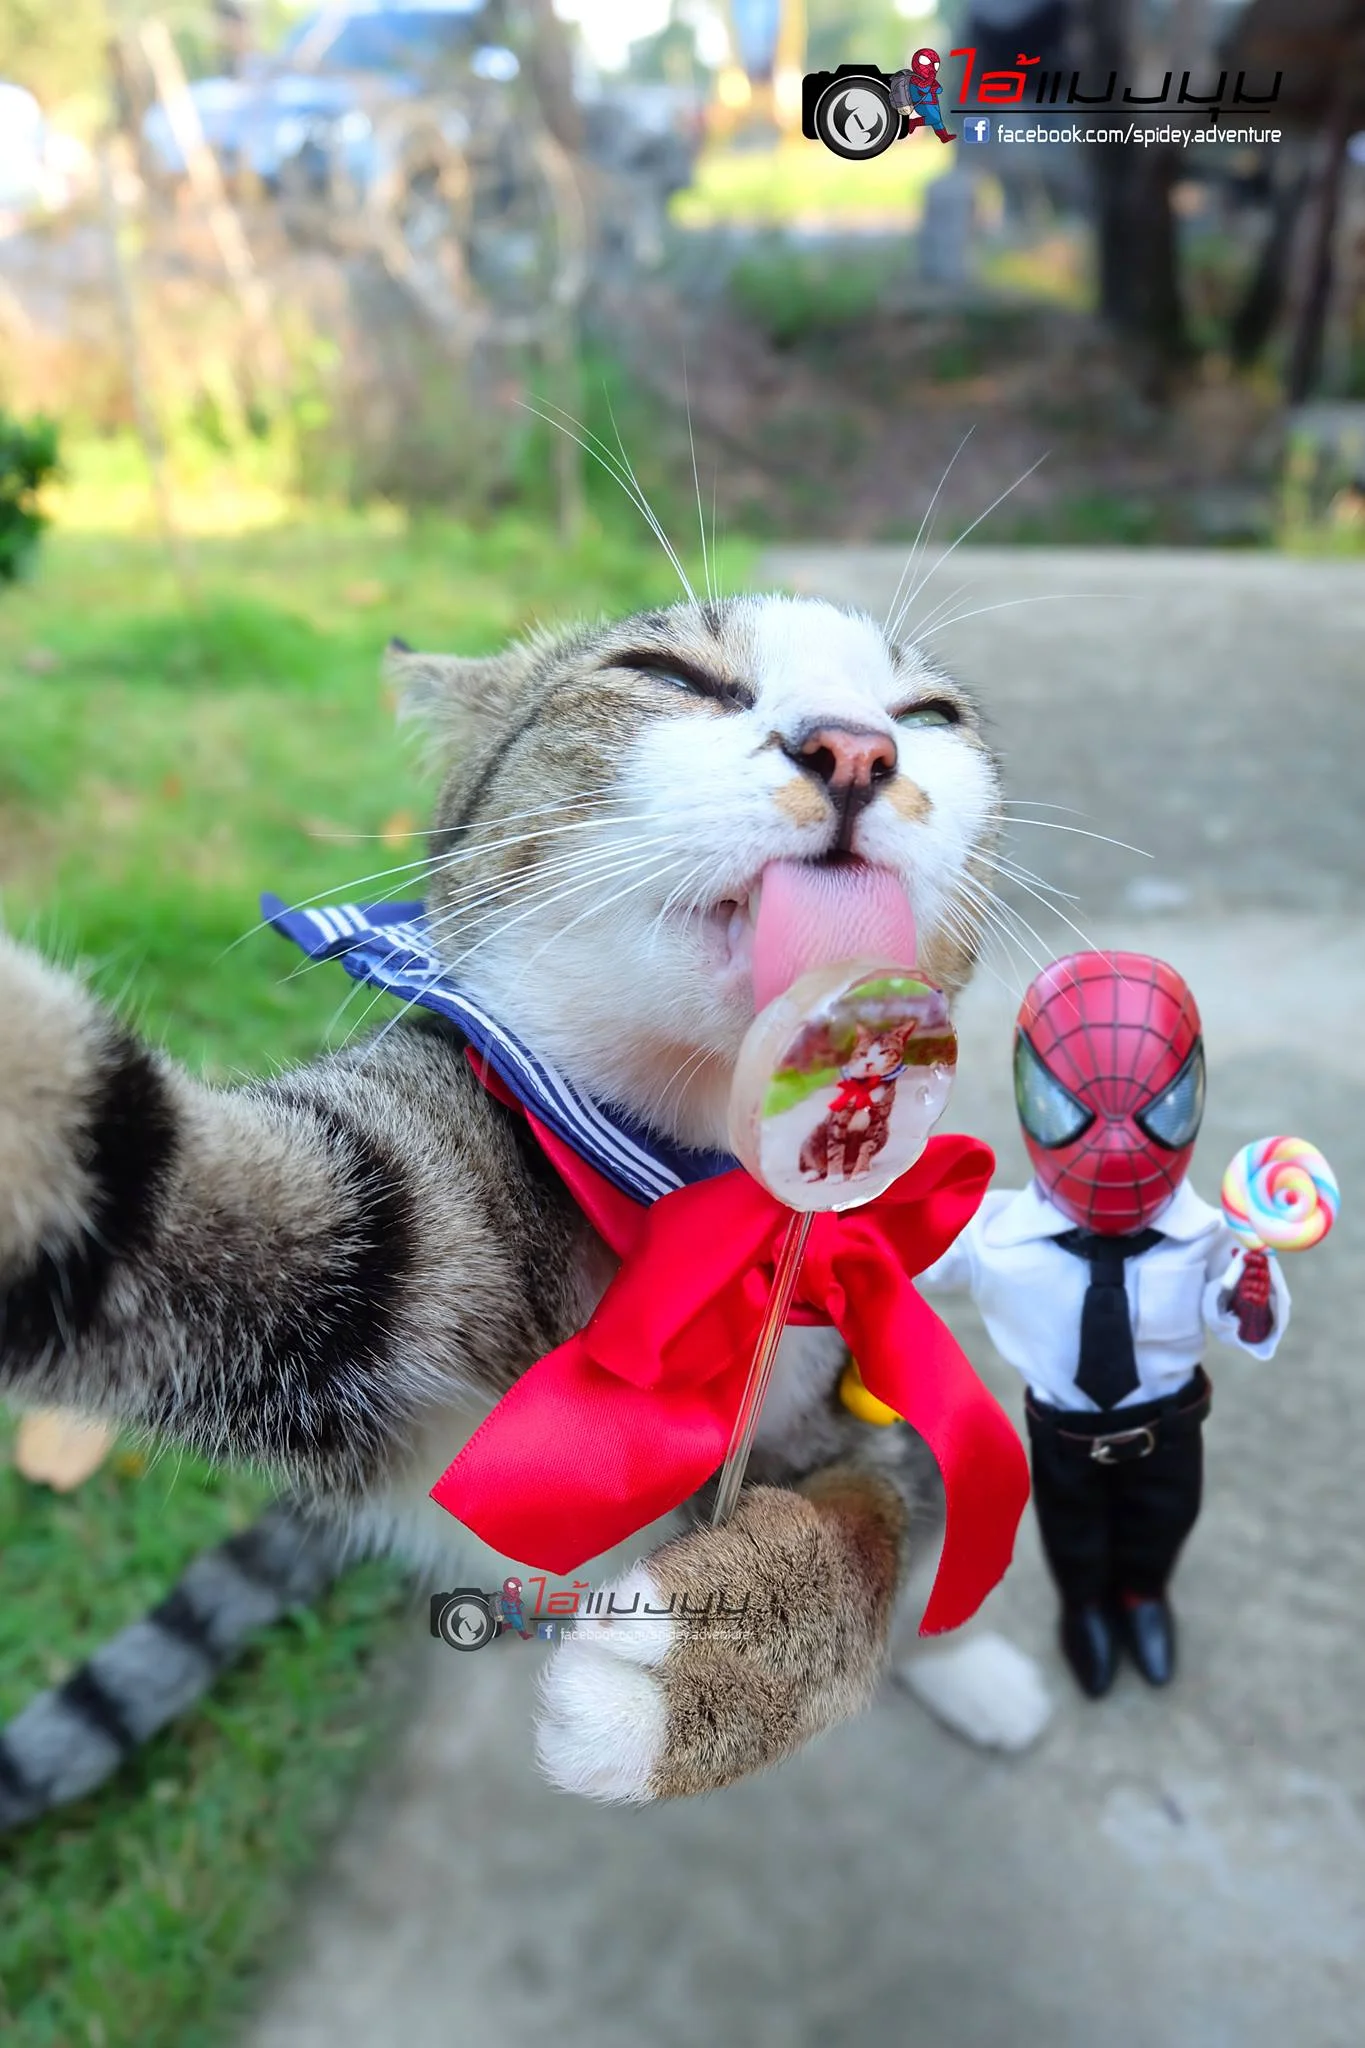 Художник додав до фото з котиками зображення Людини-павука – це виглядає дуже смішно - фото 459355